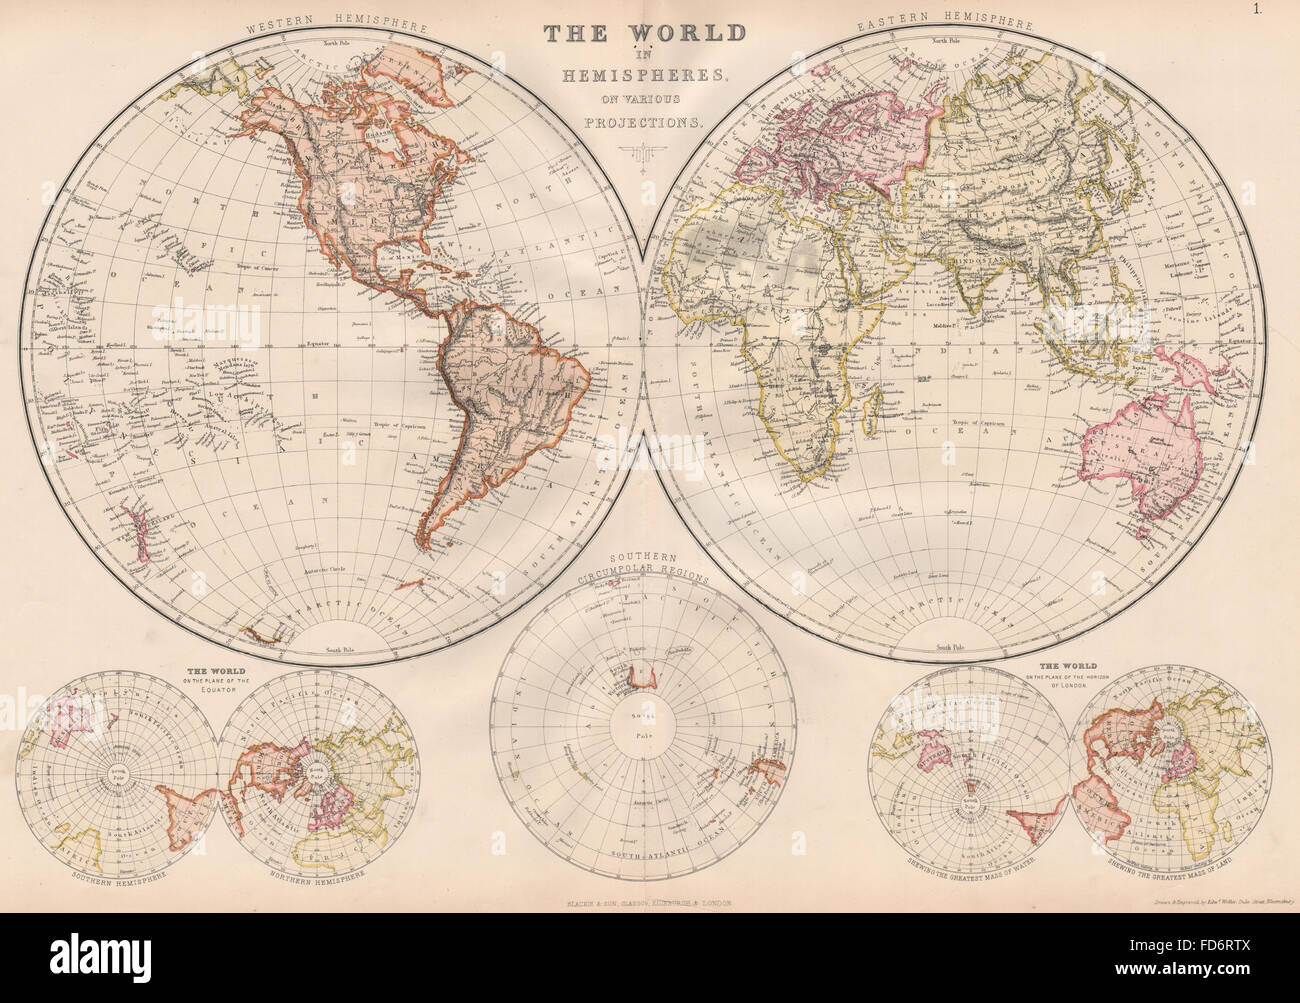 Monde en hémisphères : Antarctique équatoriale avions Londres. BLACKIE, 1882 map Banque D'Images